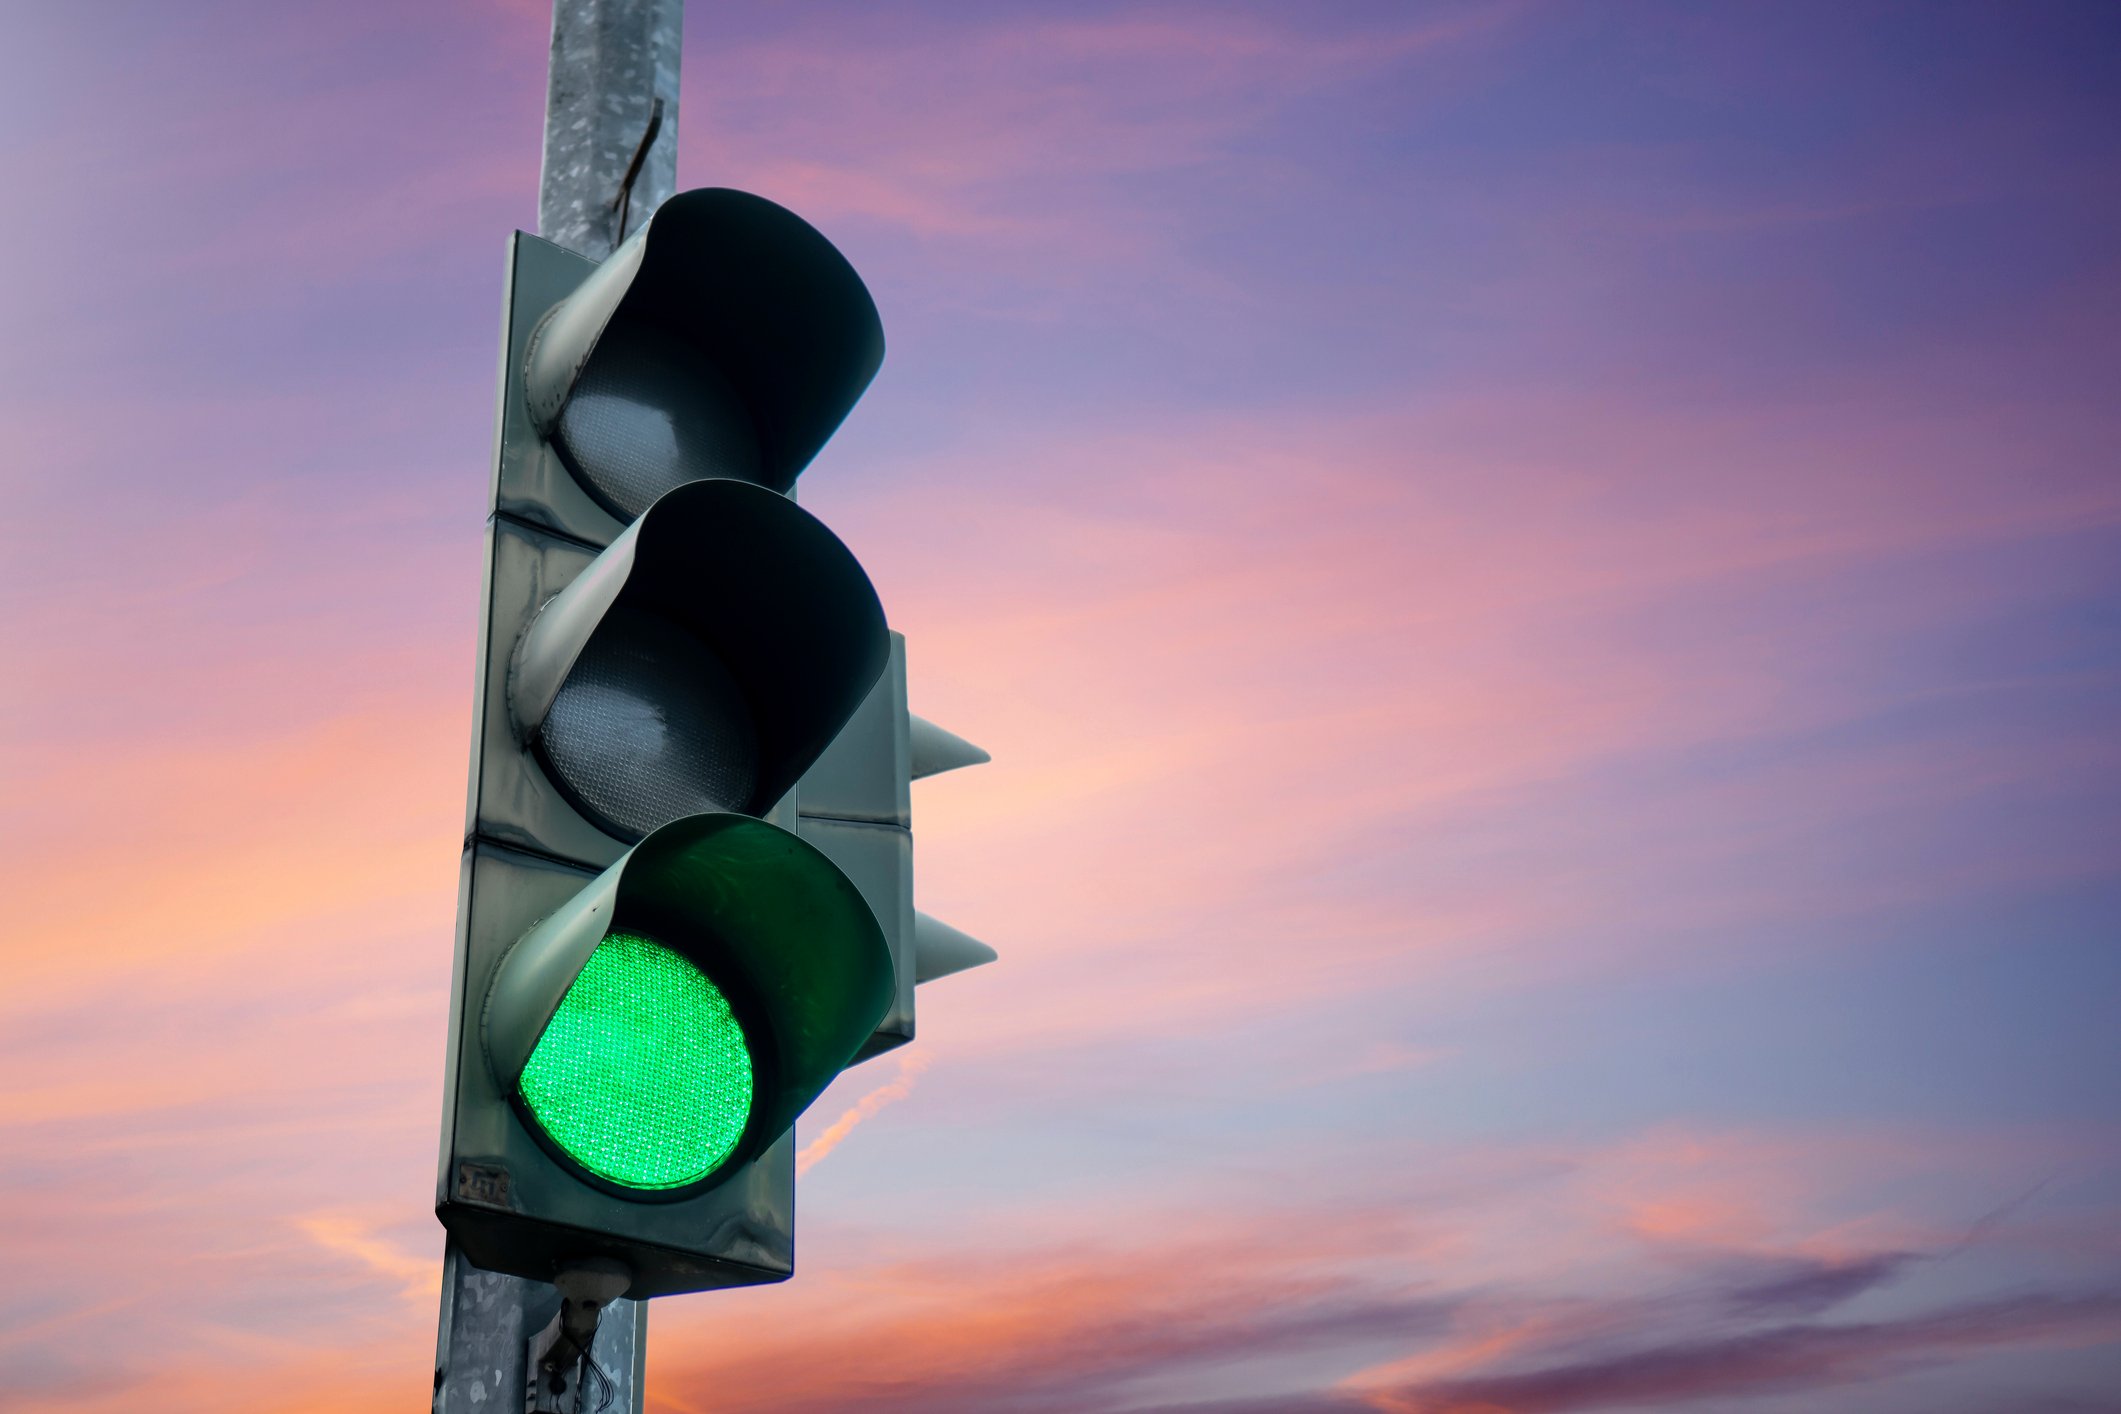 photo of a green light on a stoplight